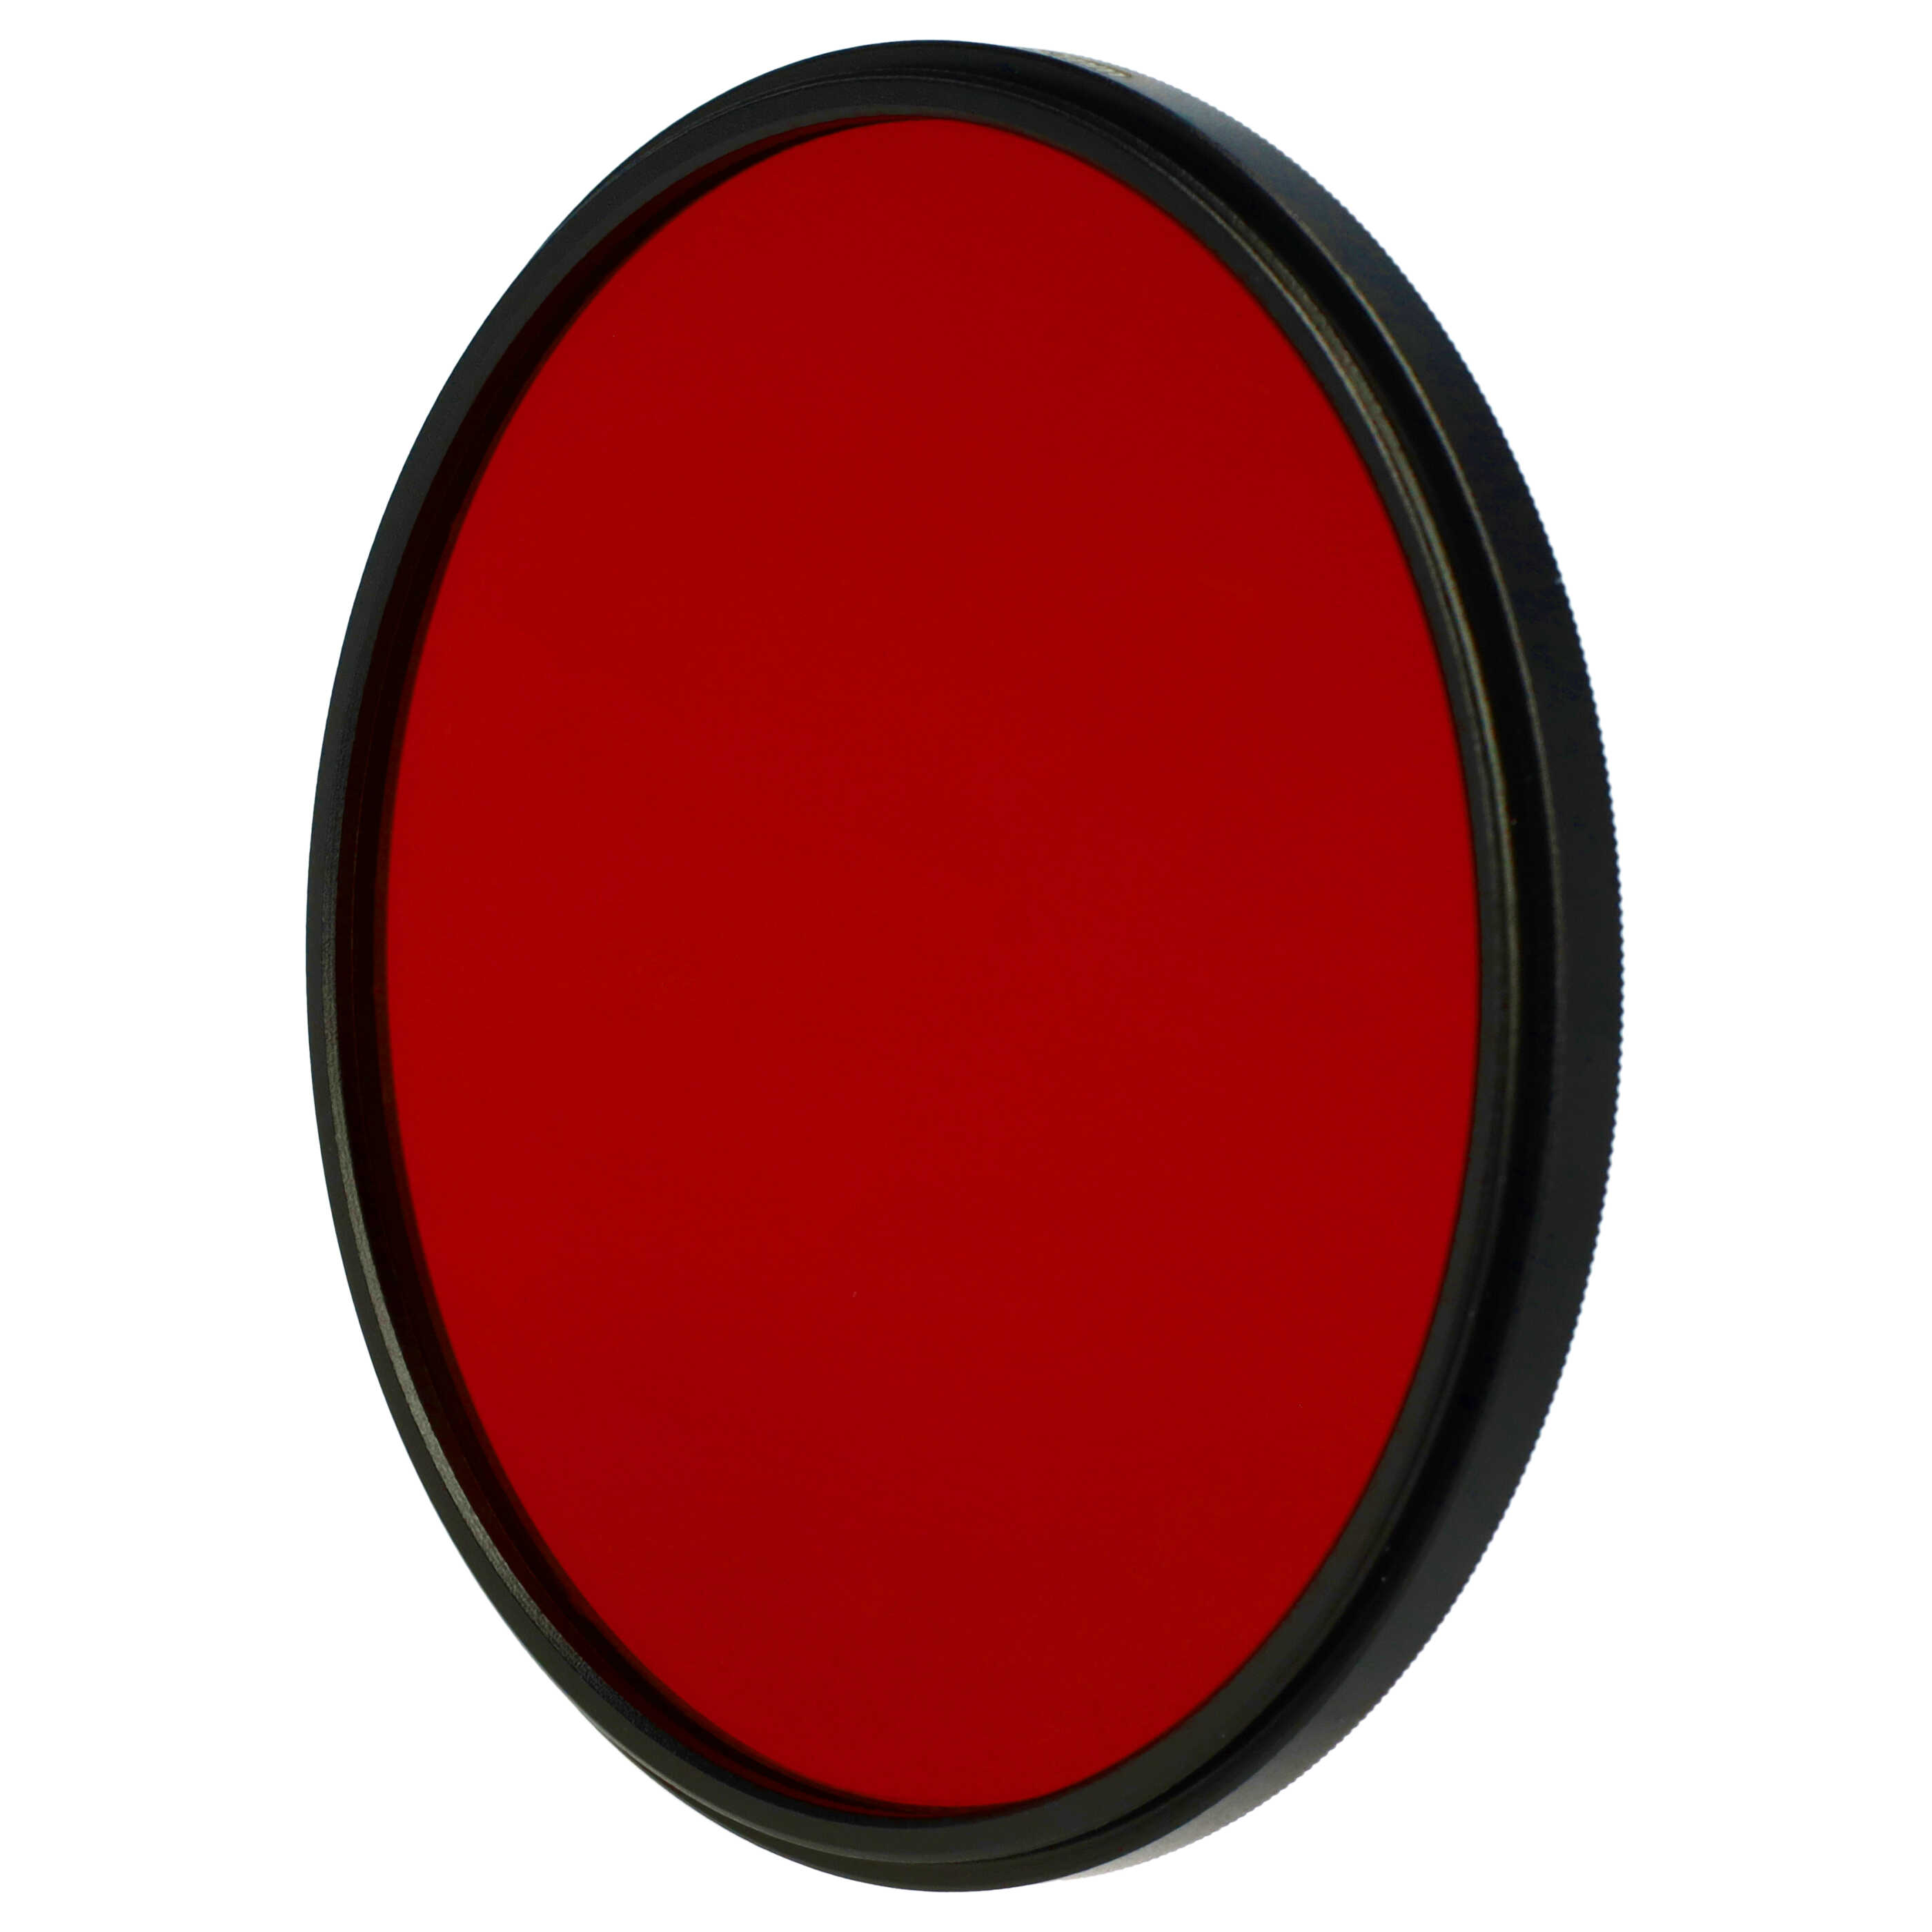 Farbfilter rot passend für Kamera Objektive mit 82 mm Filtergewinde - Rotfilter